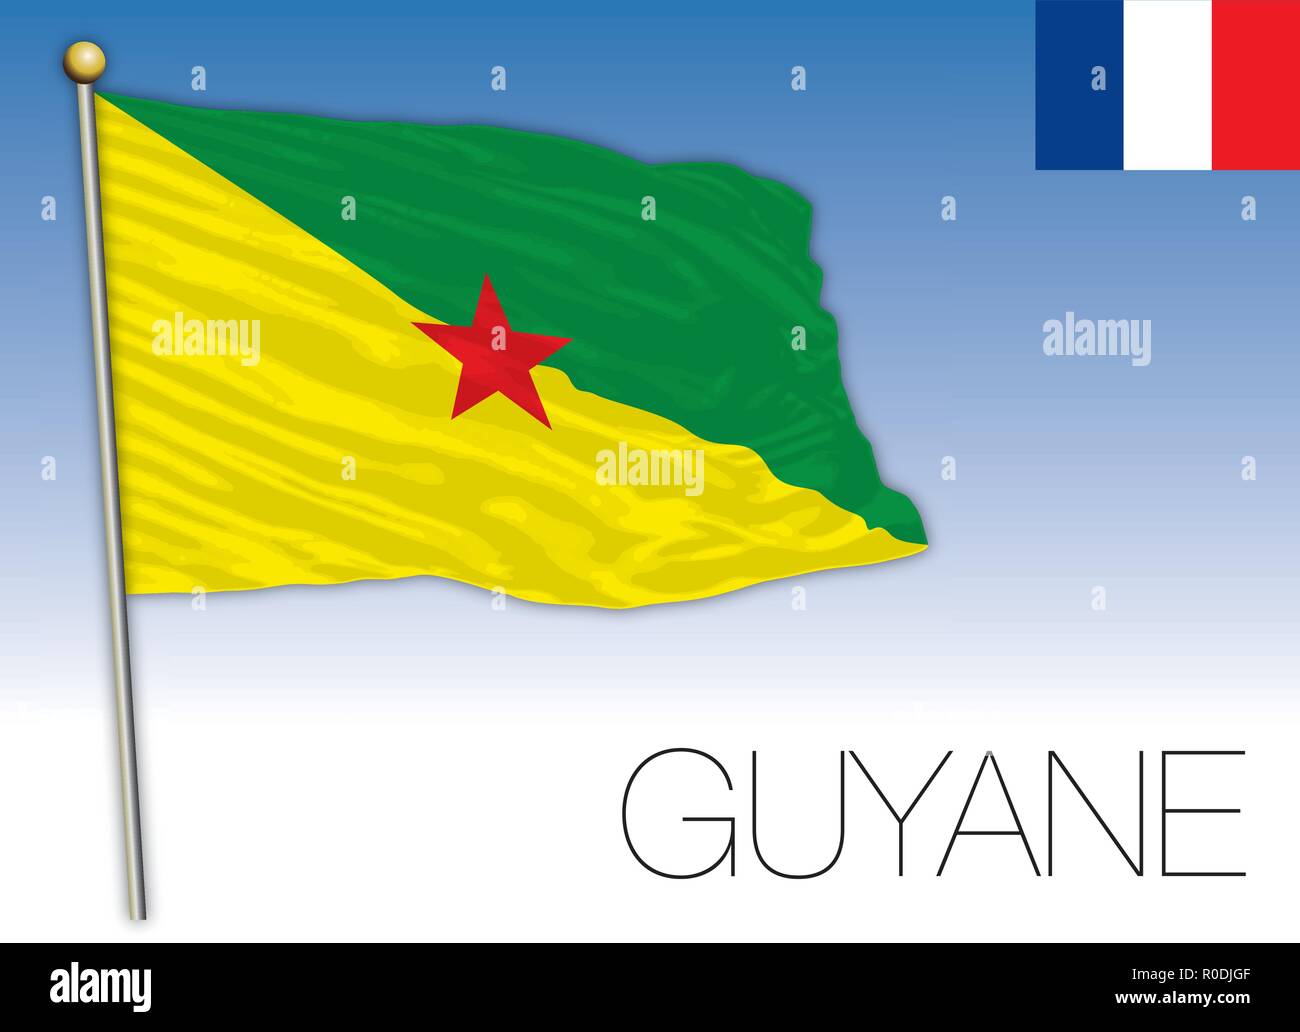 Guyane regional flag, France, vector illustration Stock Vector